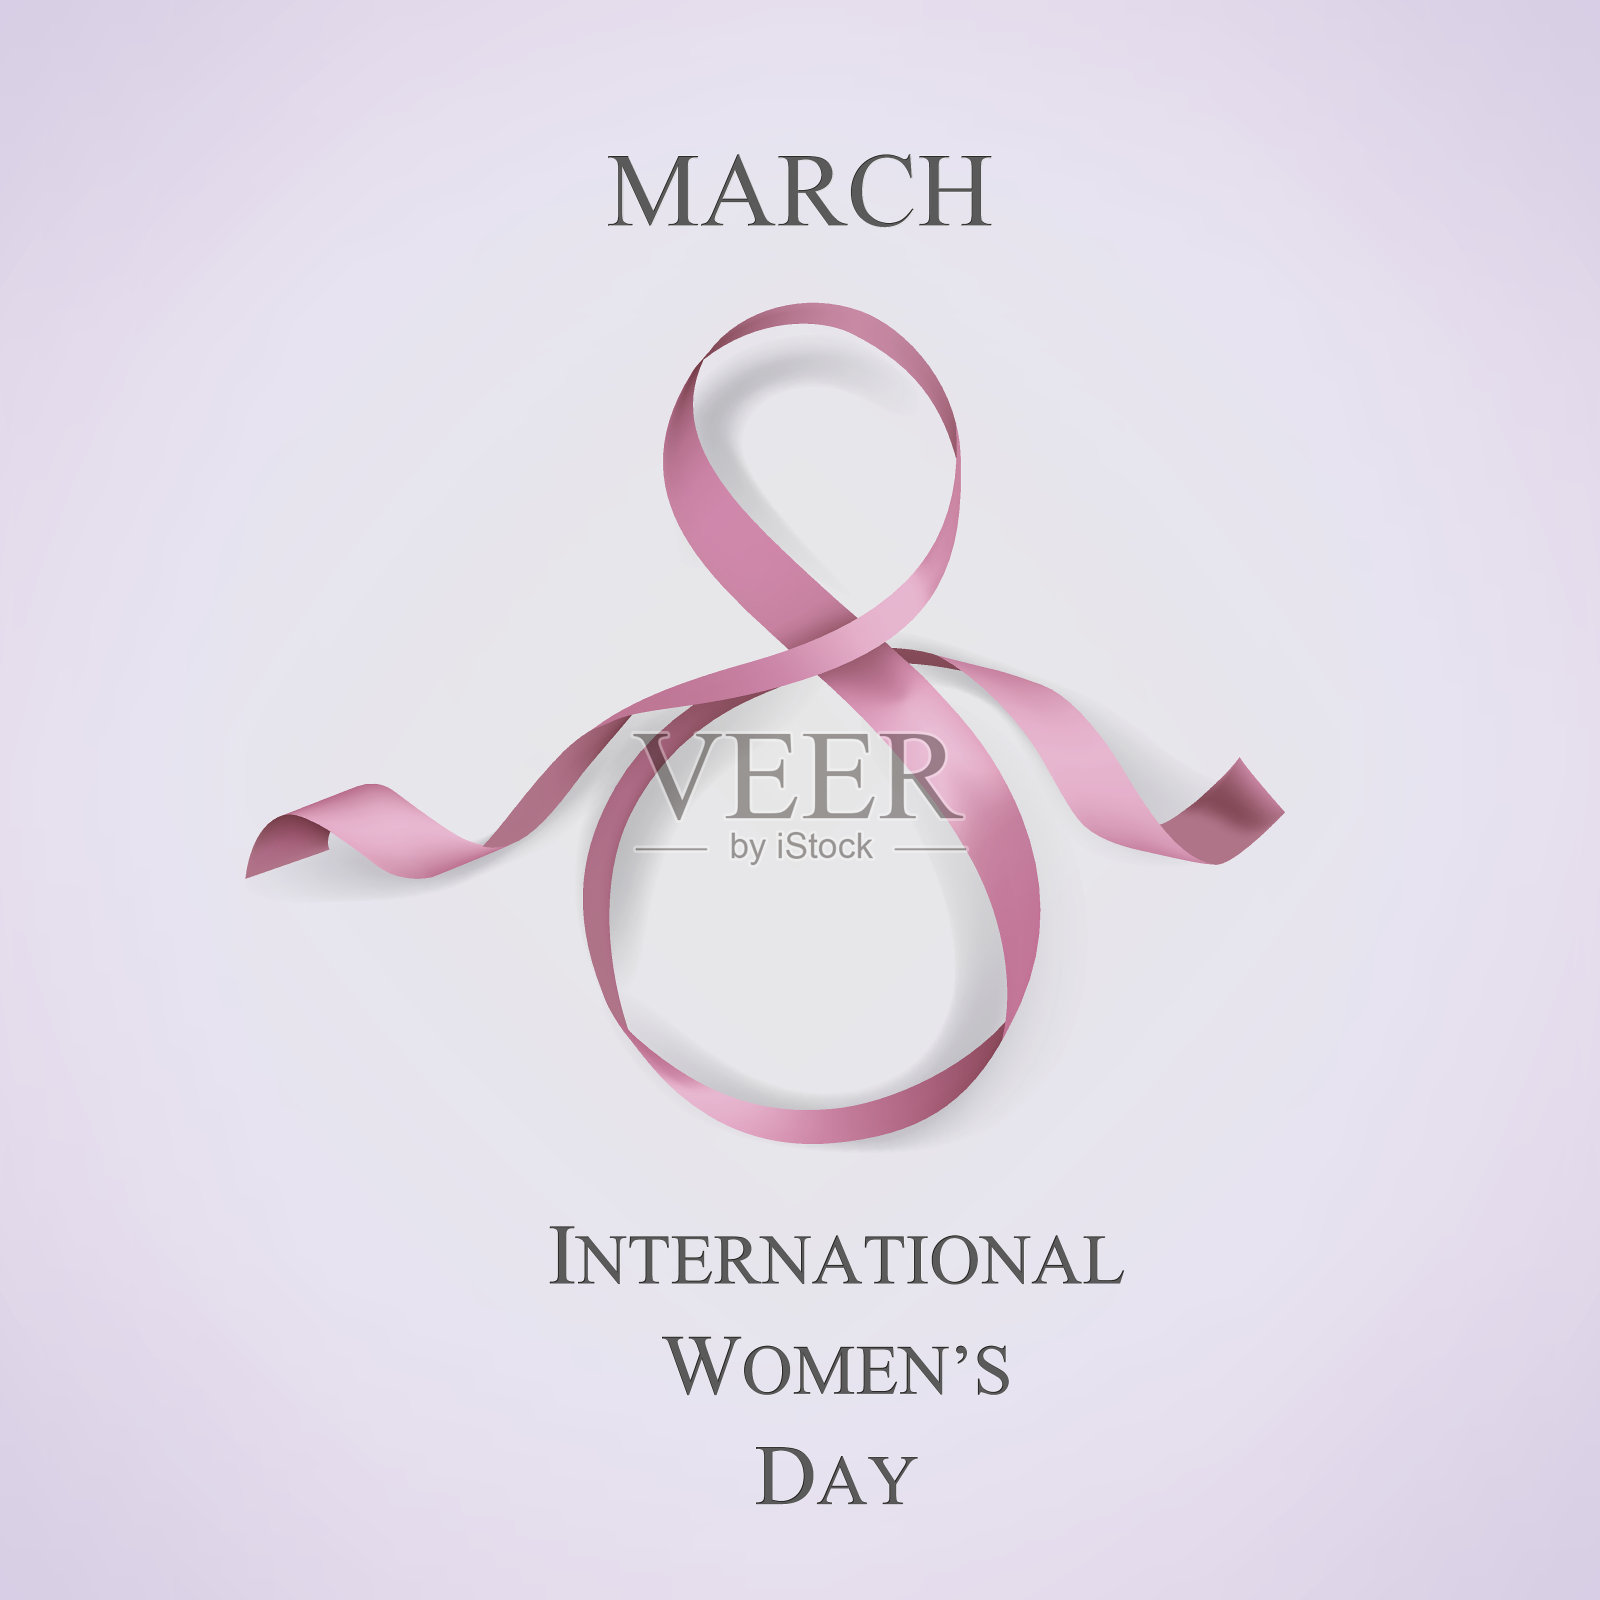 国际妇女节的模板与粉红色的丝带。矢量插图。设计模板素材